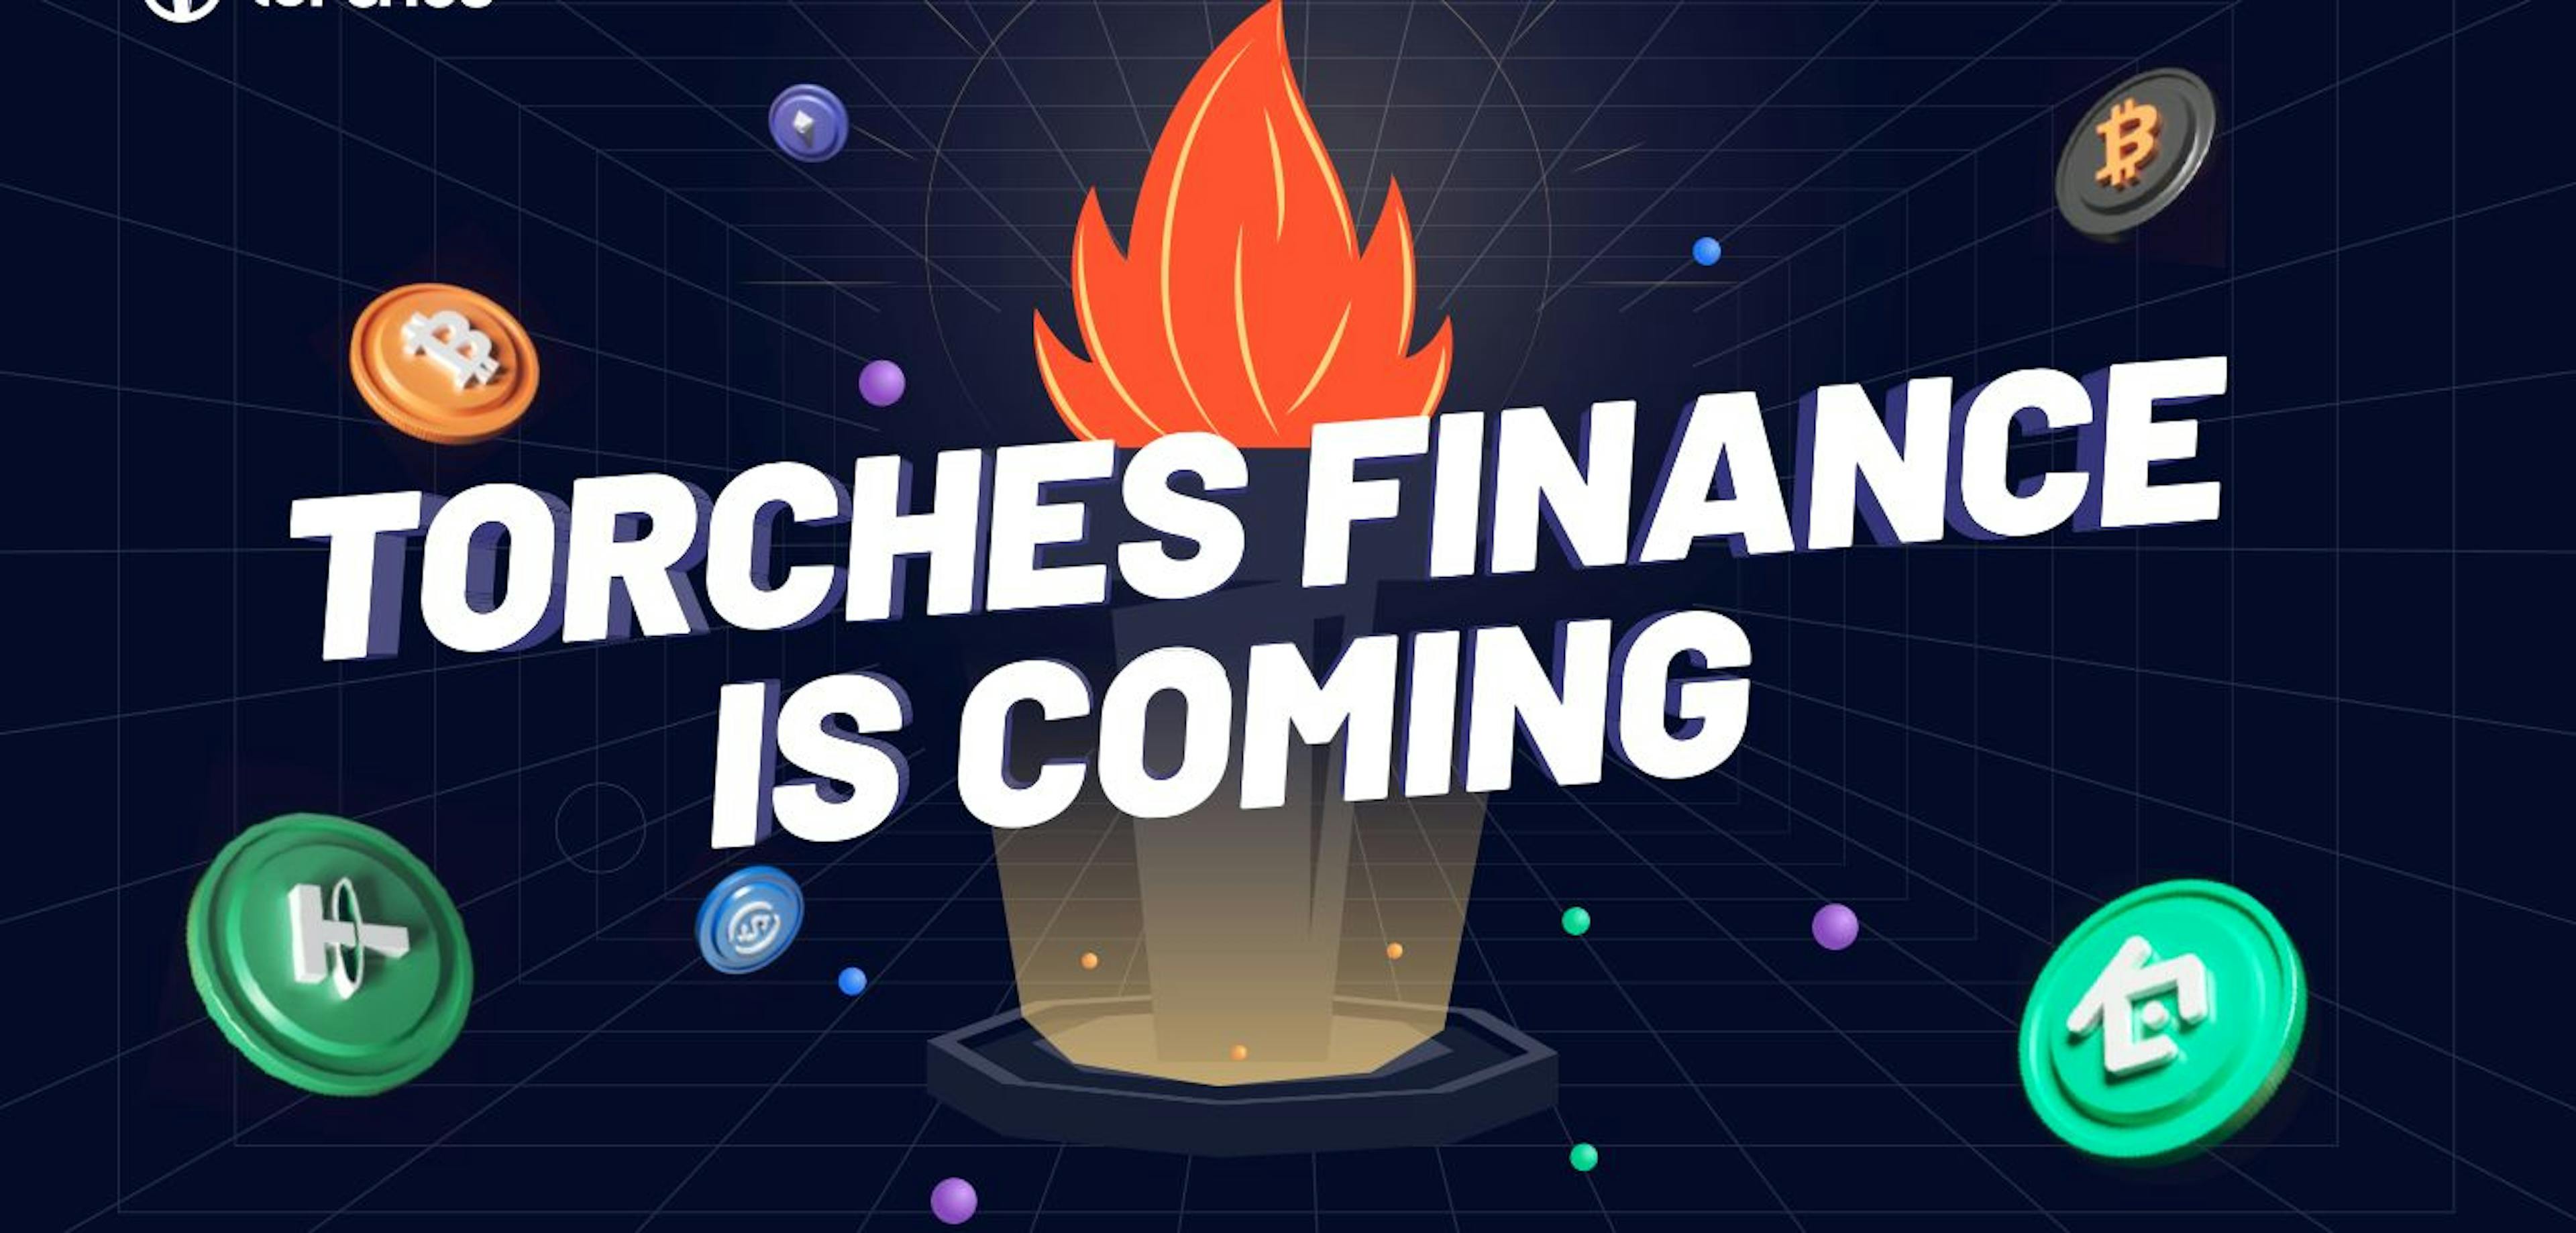 featured image - Torches Finance: un protocolo de préstamo descentralizado lanzado en KCC